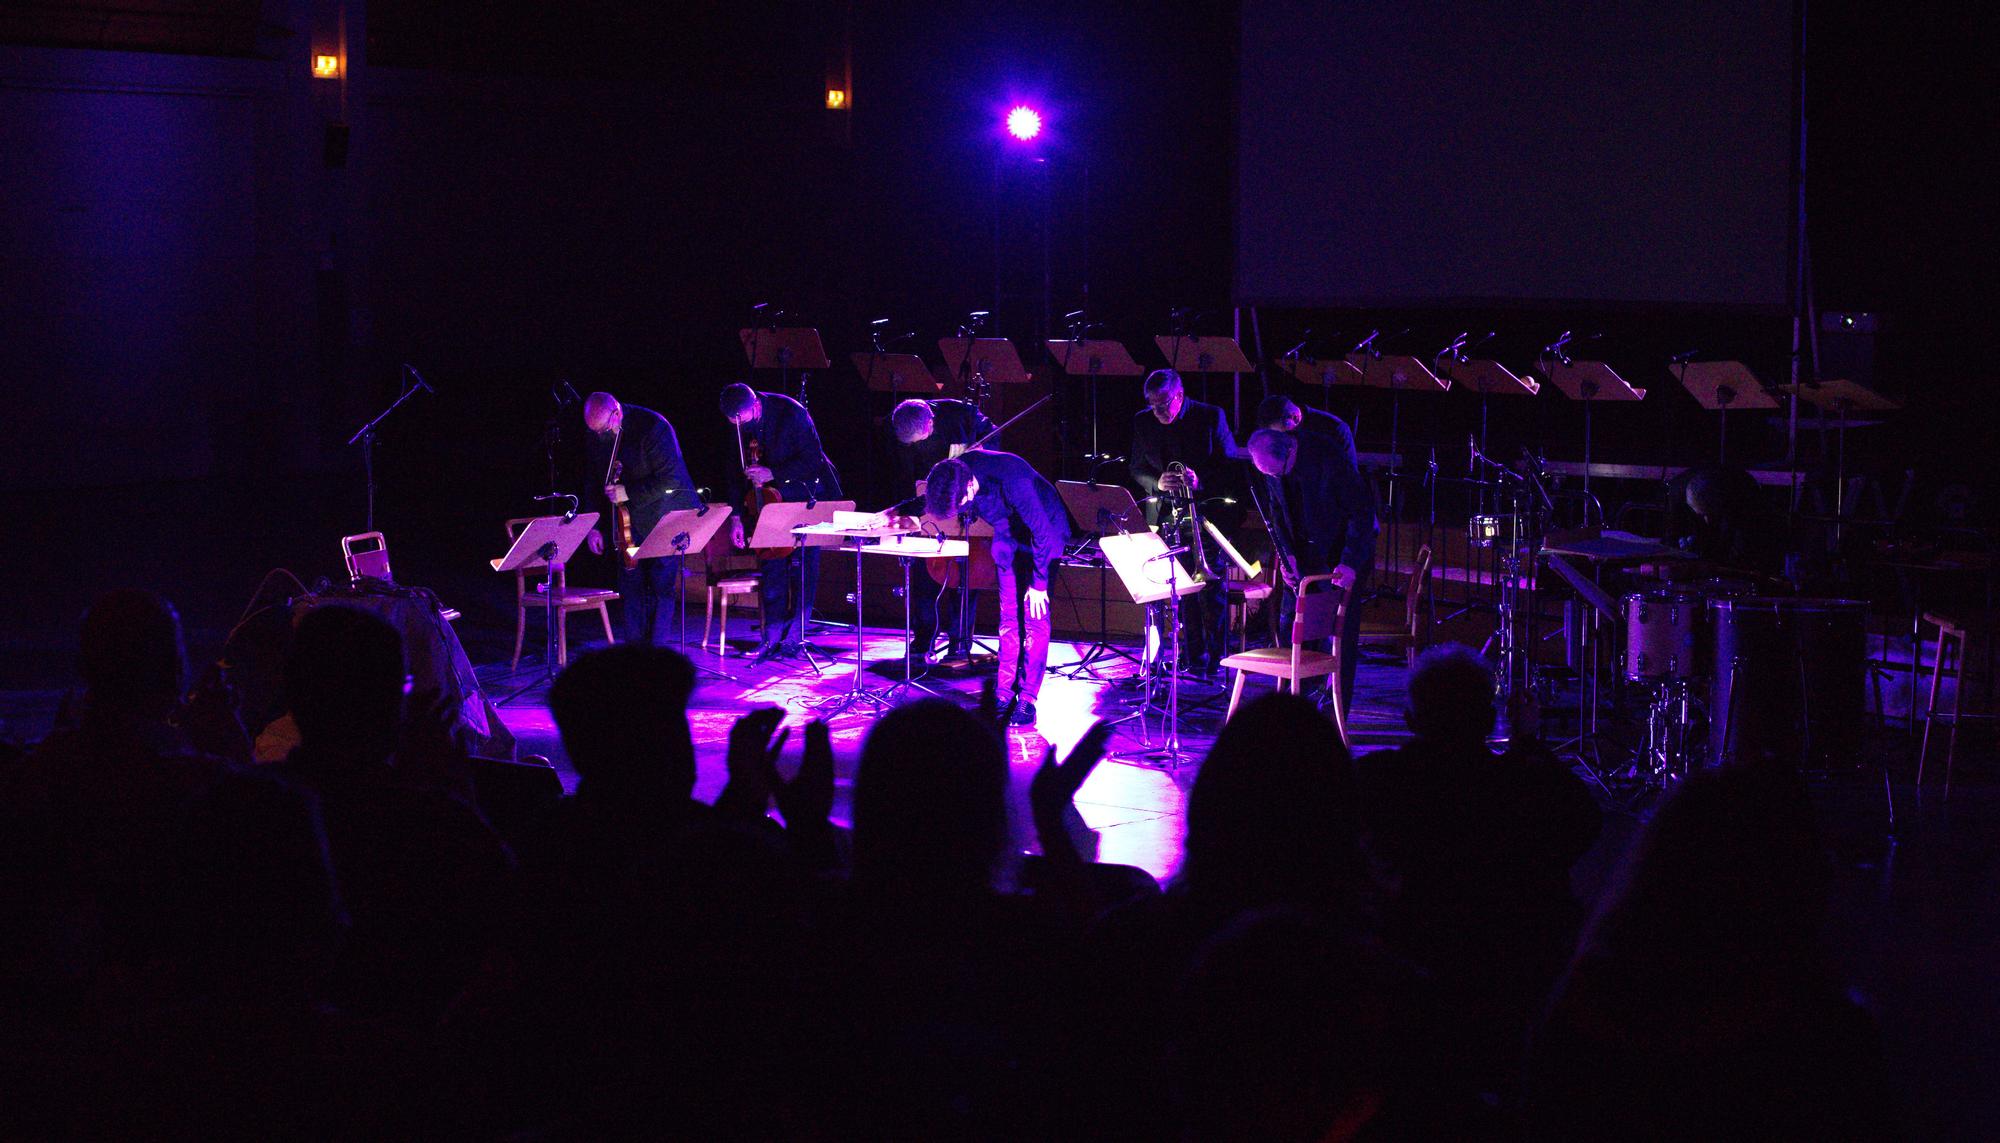 Concierto 'Tragedia' del Grupo Enigma en la sala Multiusos del Auditorio de Zaragoza